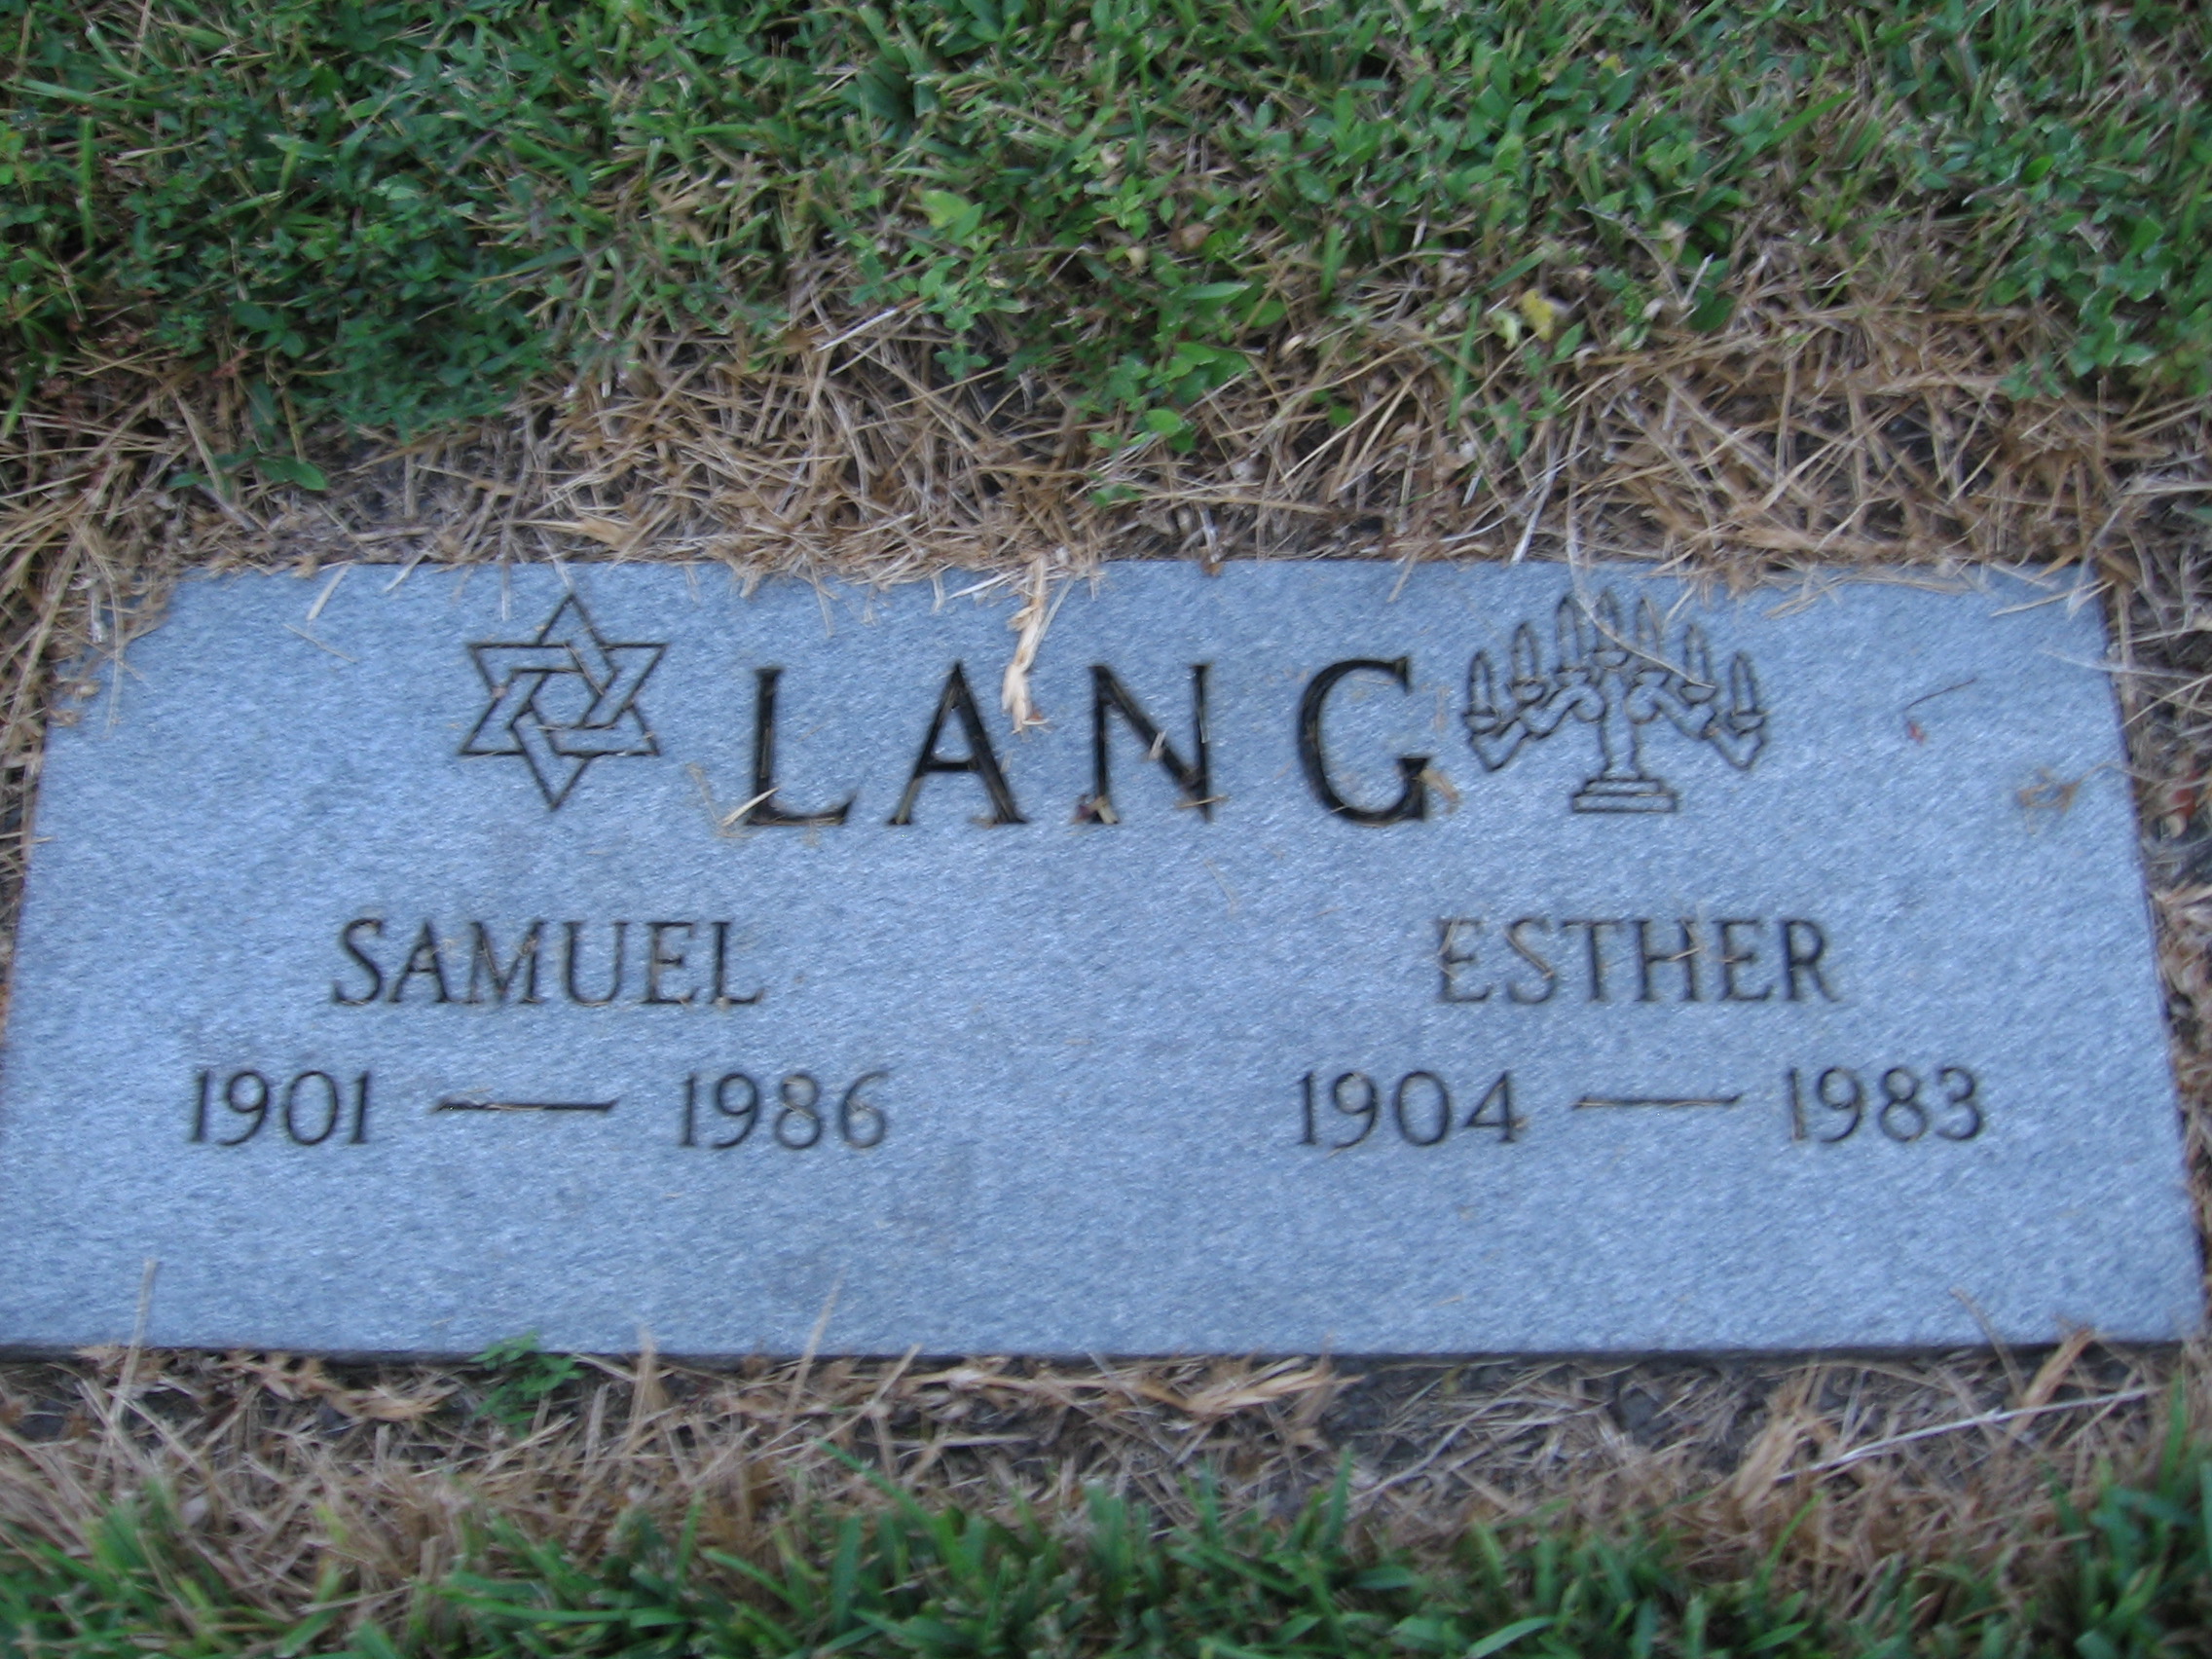 Samuel Lang